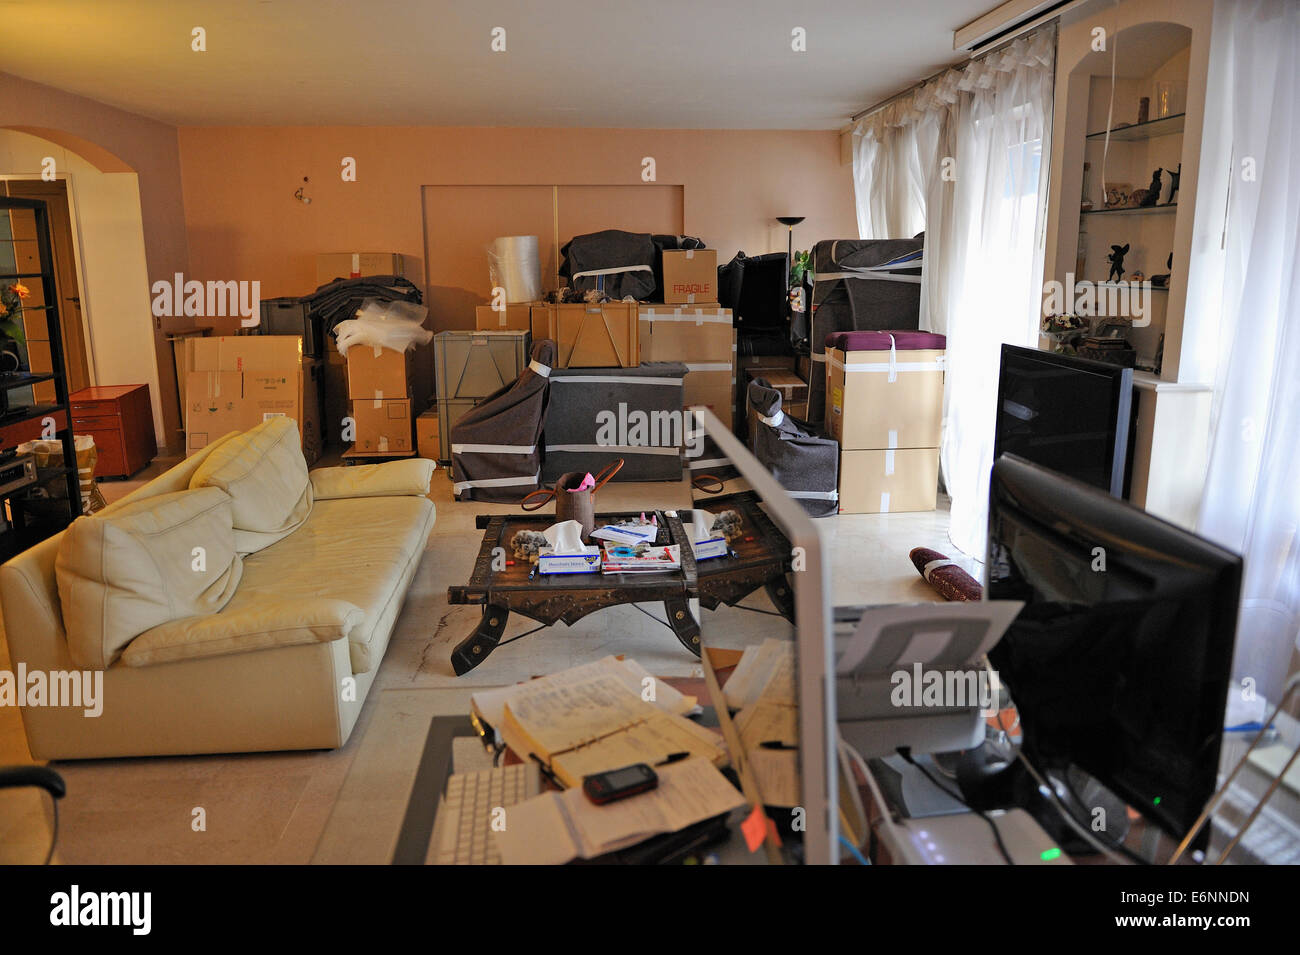 Umzug - Möbel und Kartons in Wohnzimmer bereit für Umzüge während einer Startseite weiter Stockfoto